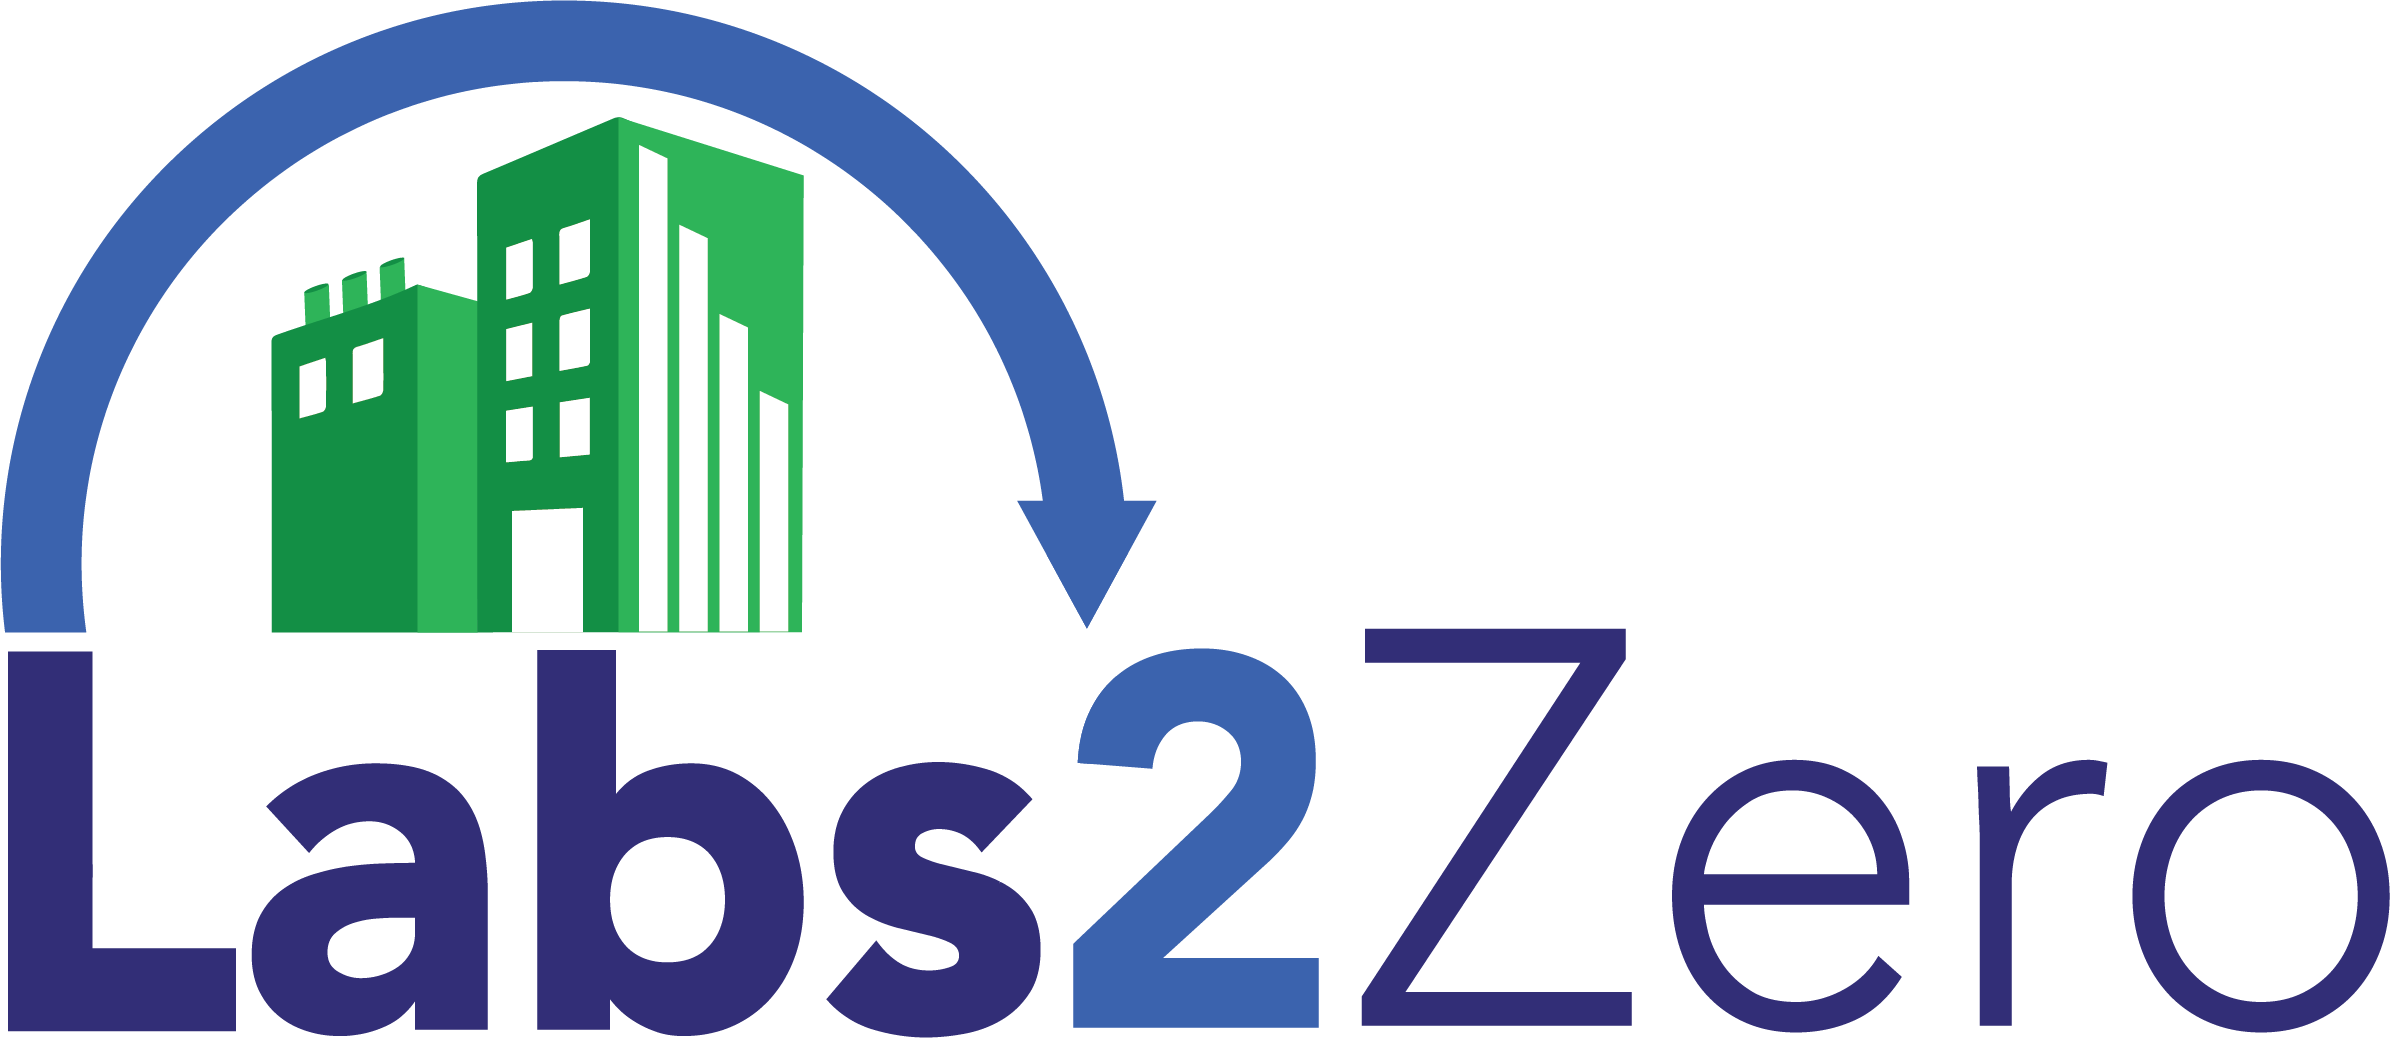 I2SL Logo